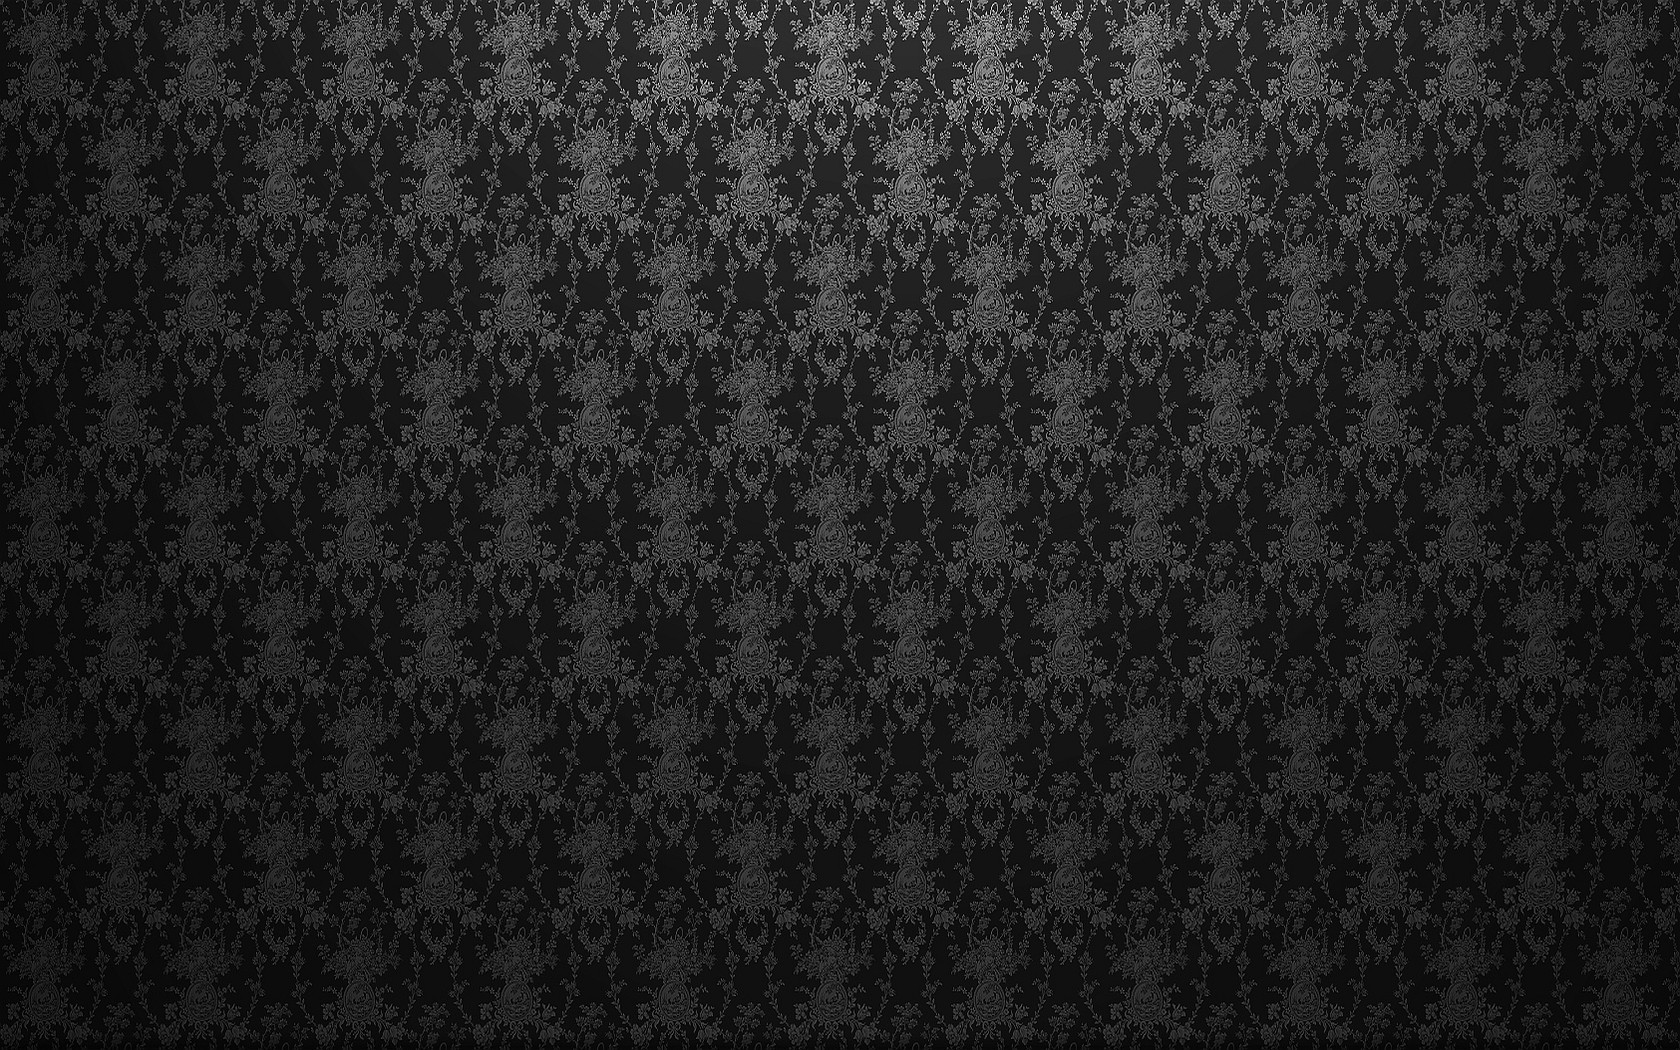 General 1680x1050 pattern texture minimalism